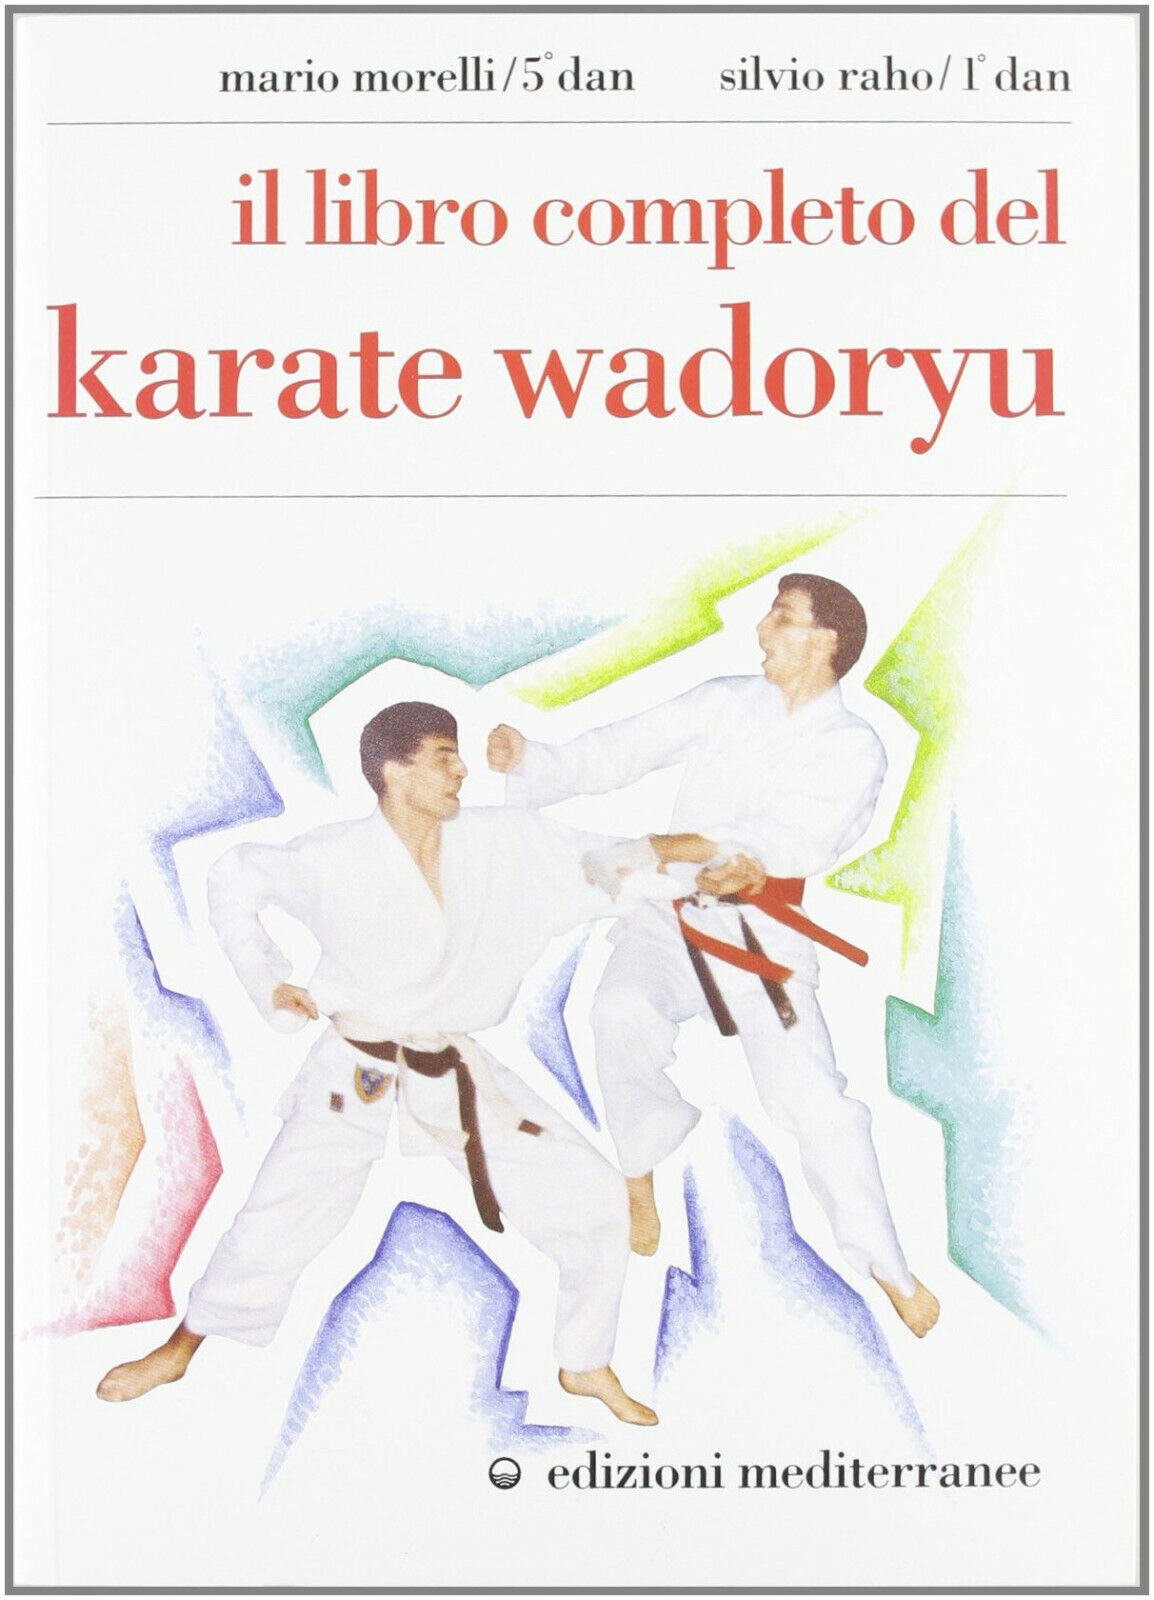 Il libro completo del karate wadoryu -Mario Morelli-Edizioni Merditerranee,1991 libro usato